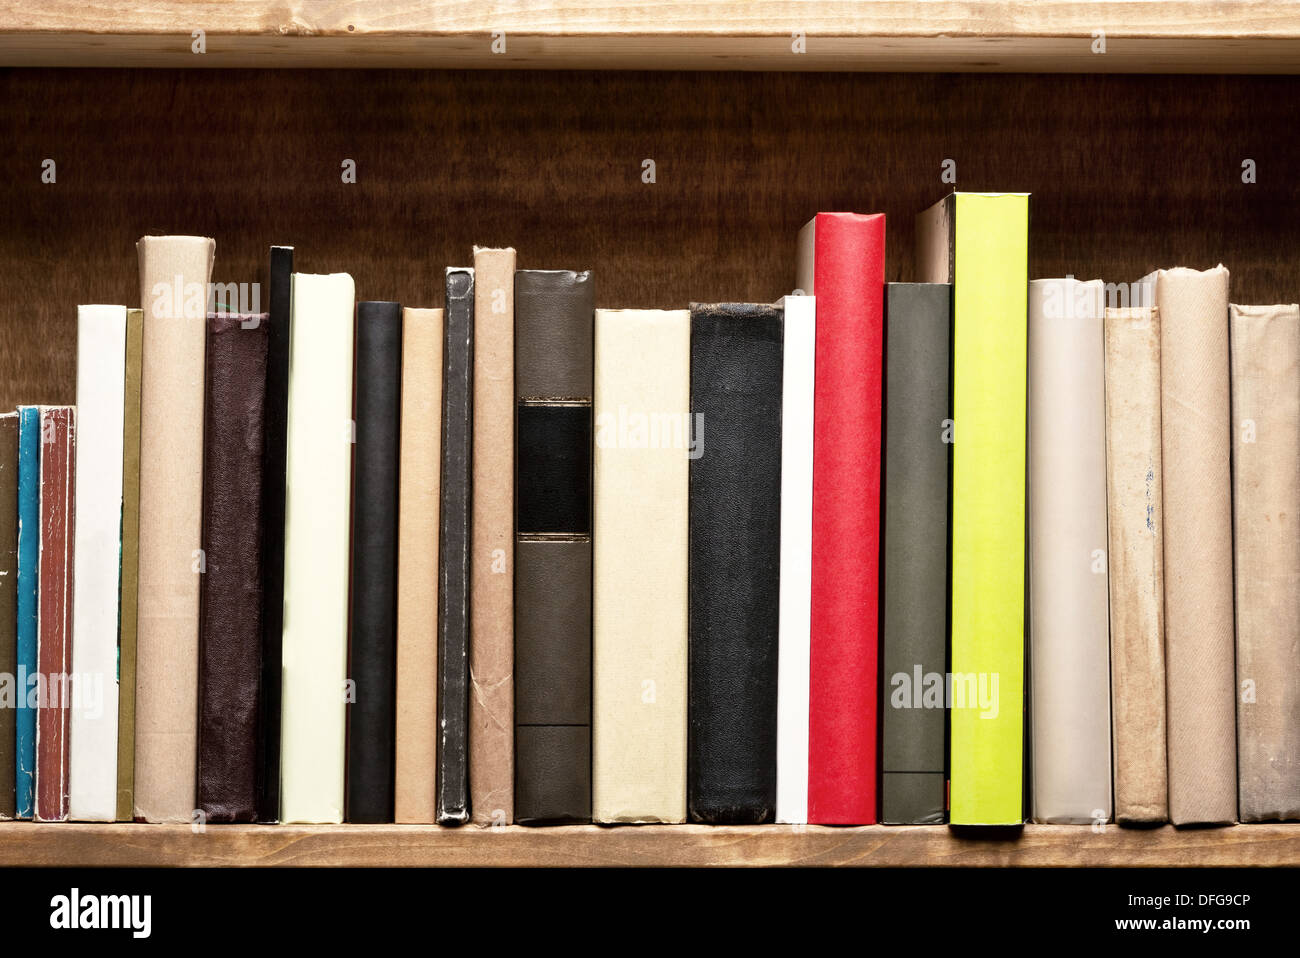 Alte Bücher auf einem Holzregal. Keine Etiketten, leere Wirbelsäule. Stockfoto